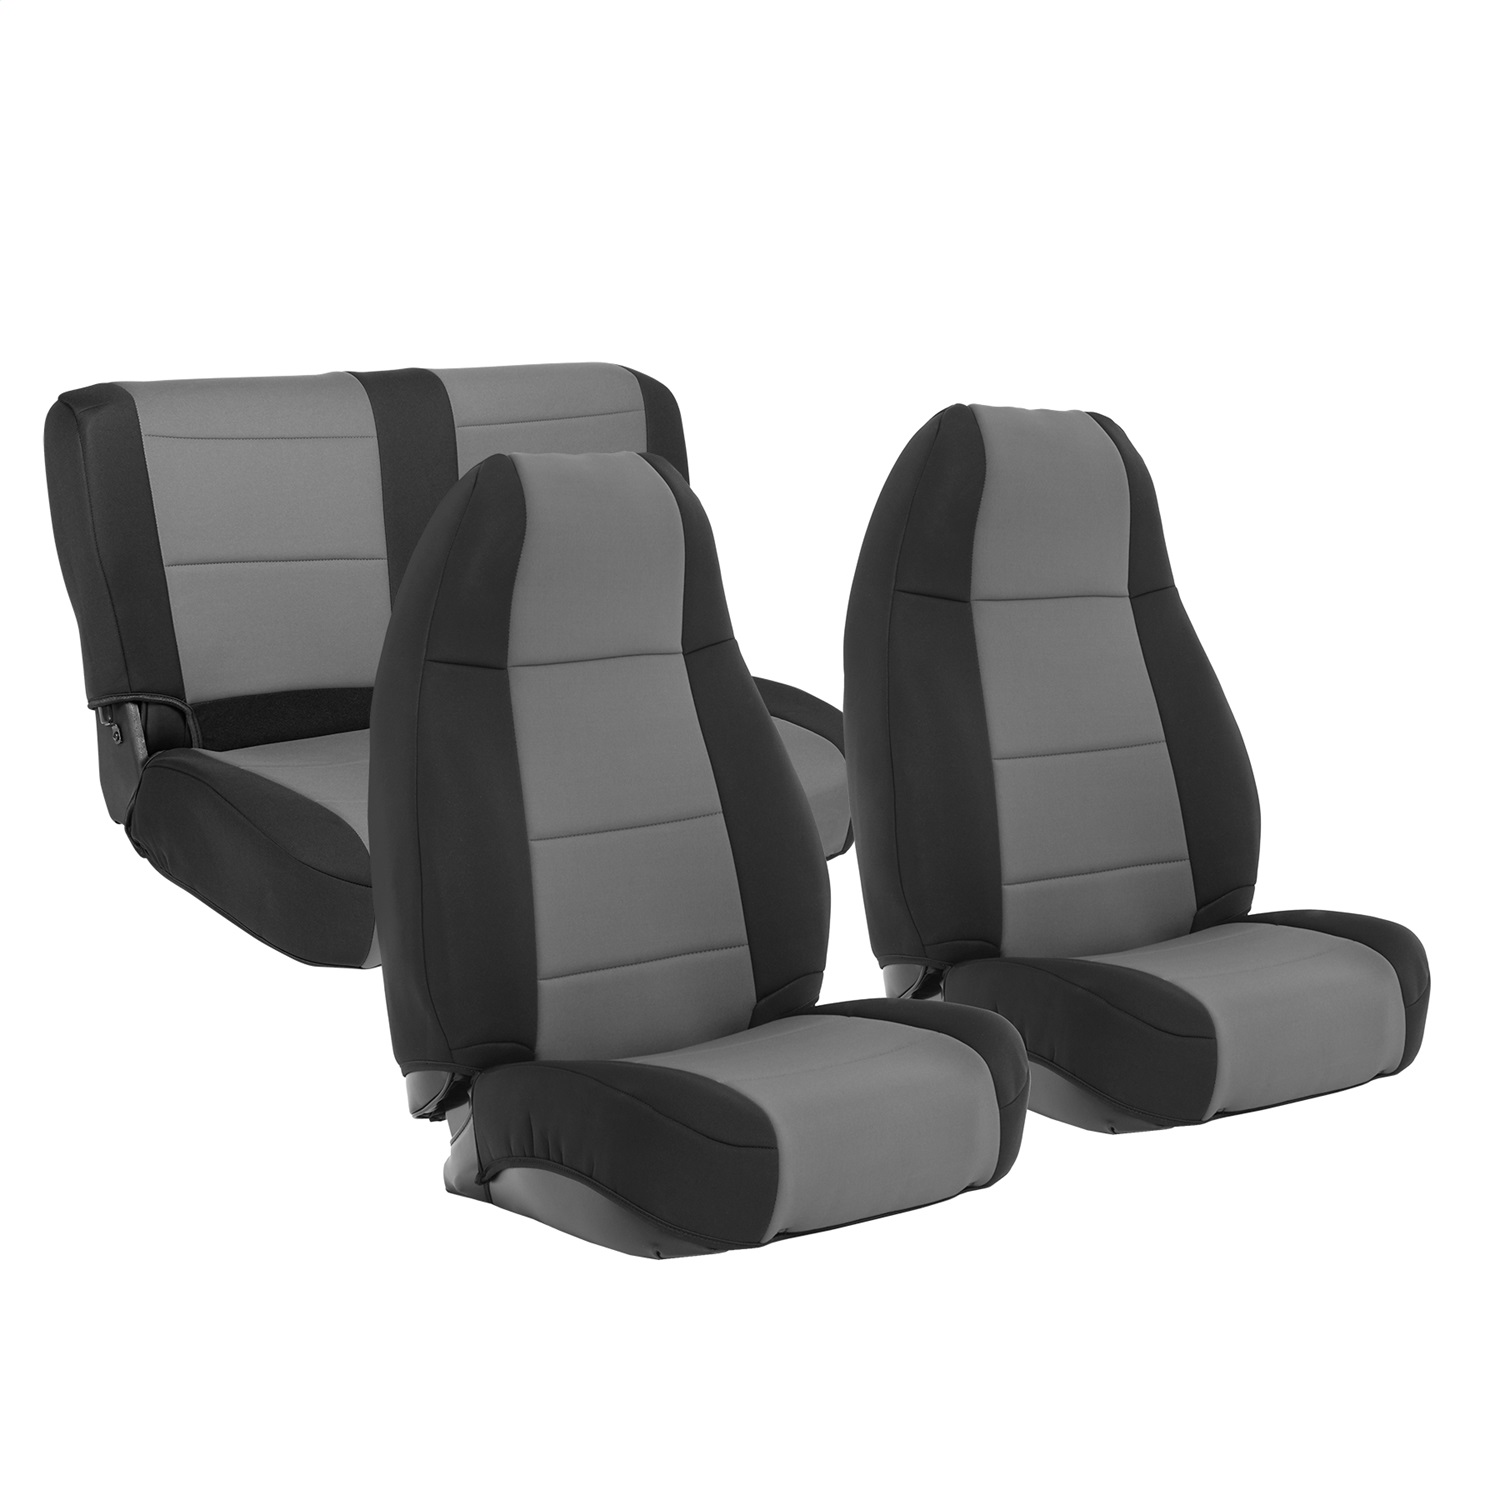 Smittybilt 471122 Neoprene Seat Cover Fits 91-95 Wrangler (YJ)